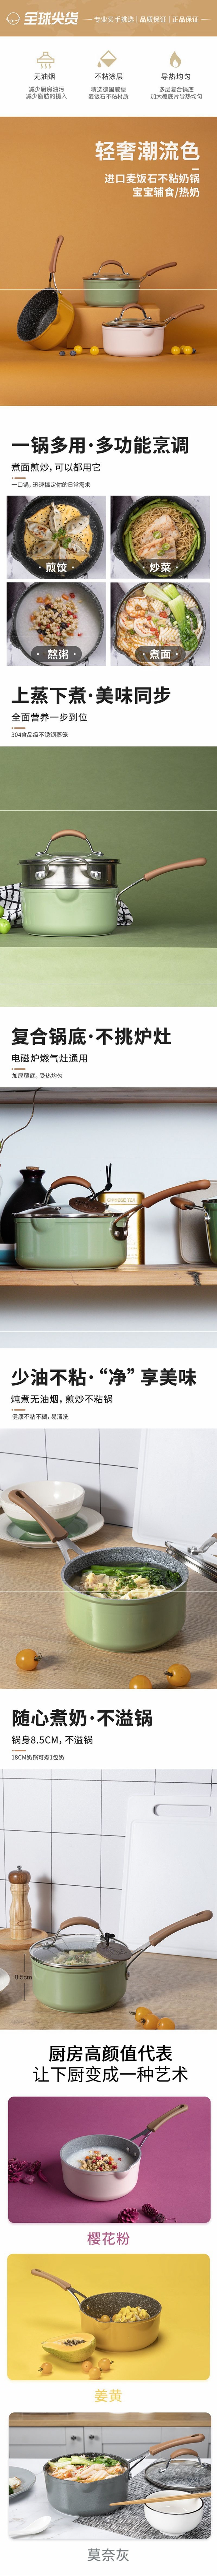 网易严选多色可选多功能锅 一锅多用轻松烹饪 奶锅 (灰色)16cm